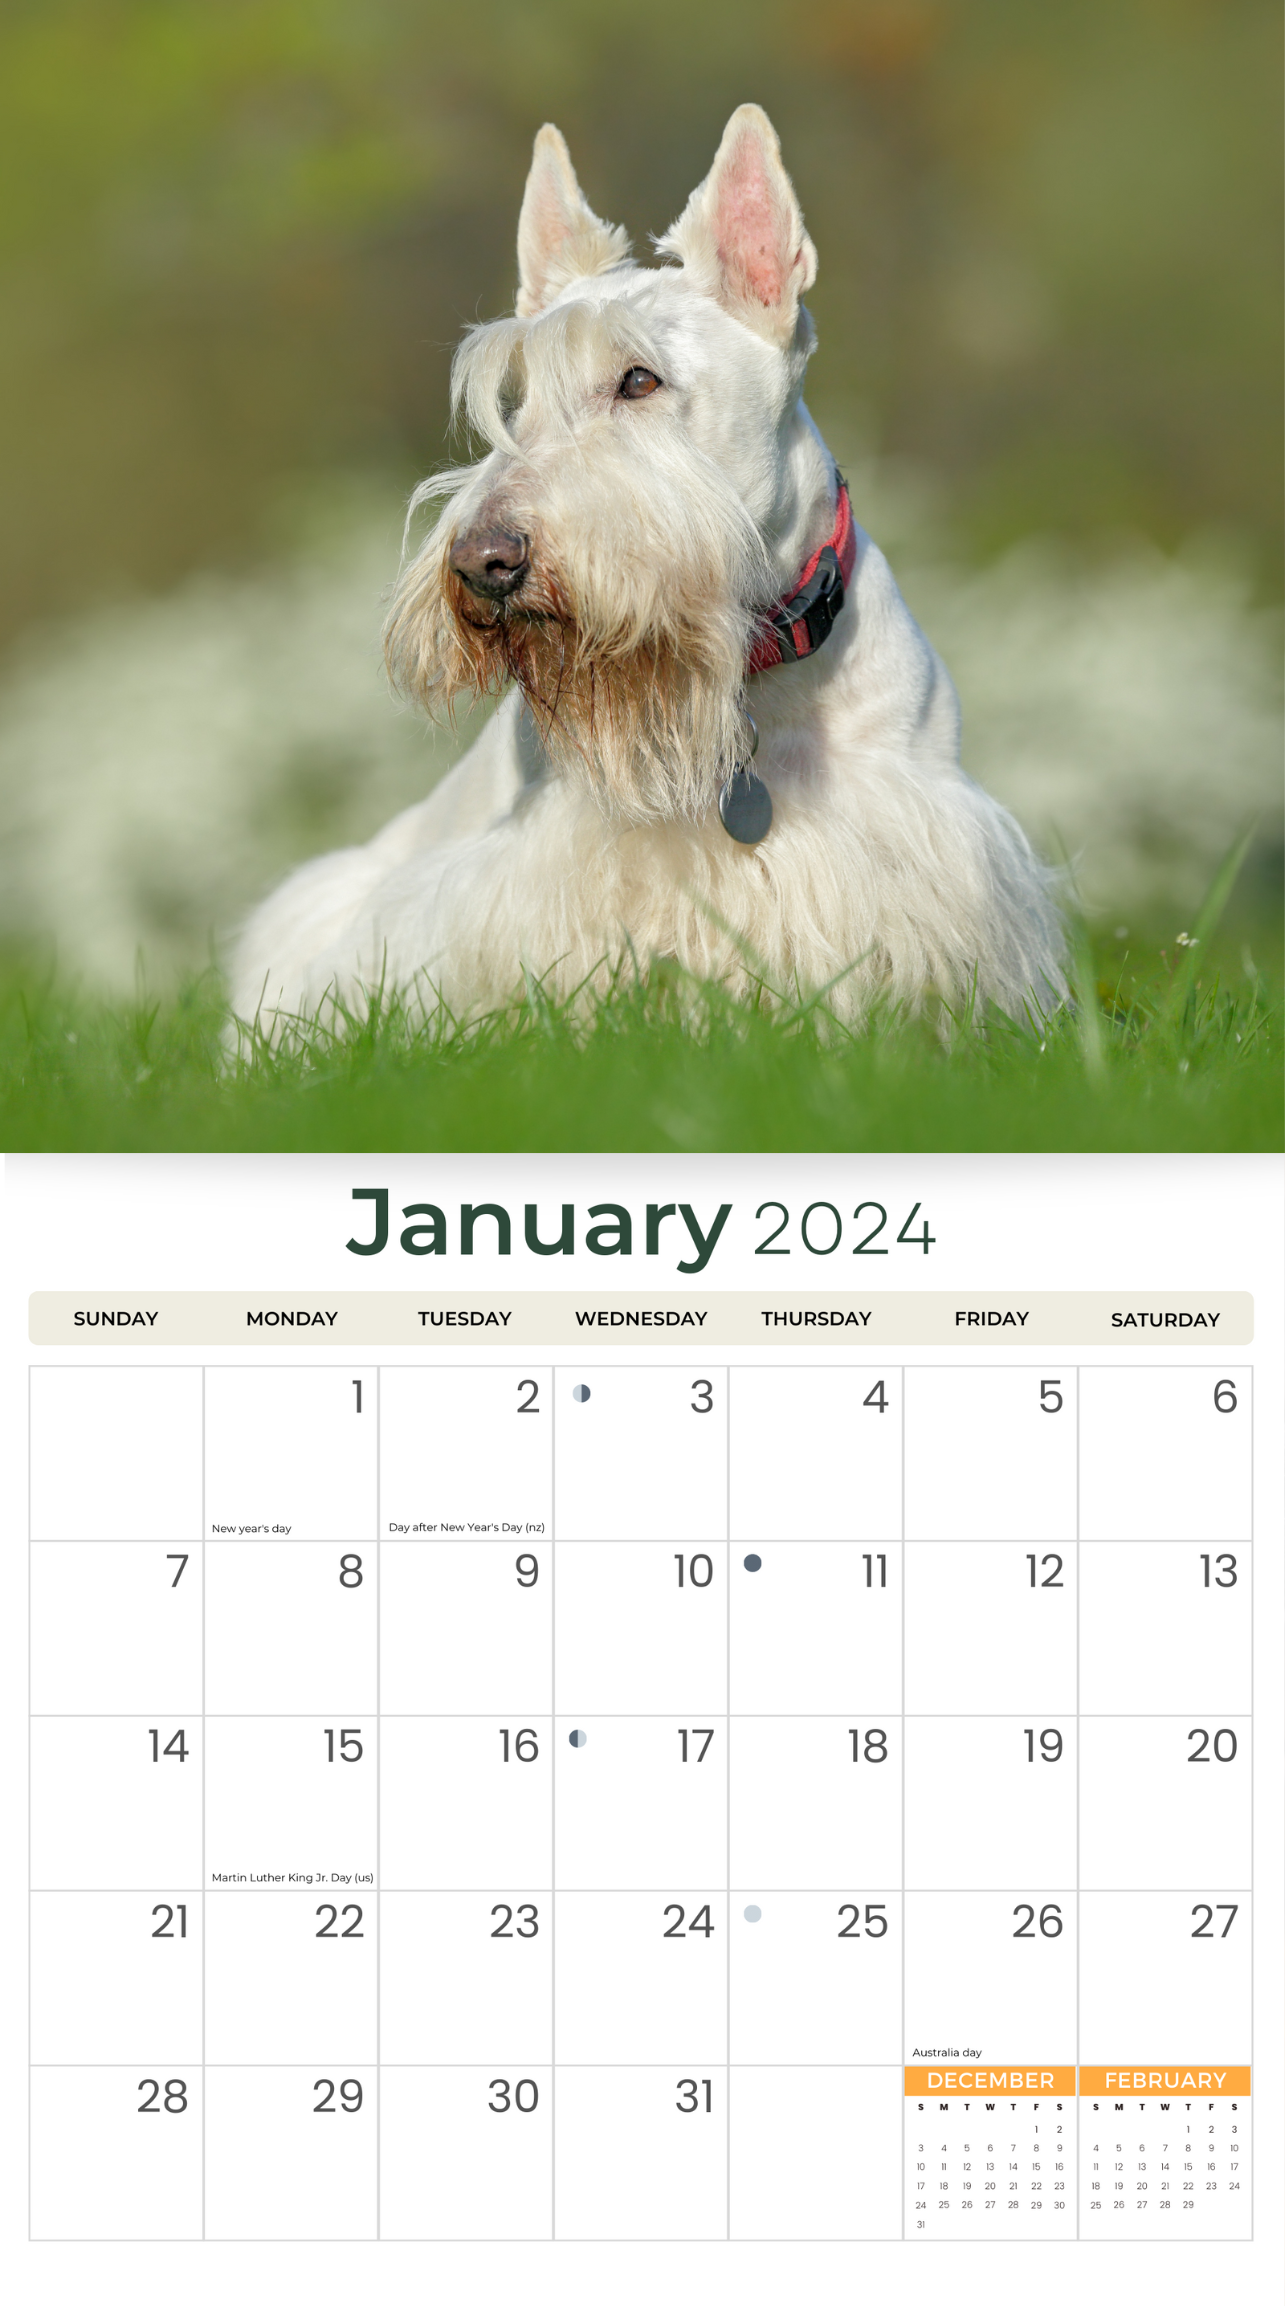 2024 Scotties (Scottish Terriers) Deluxe Wall Calendar Dogs